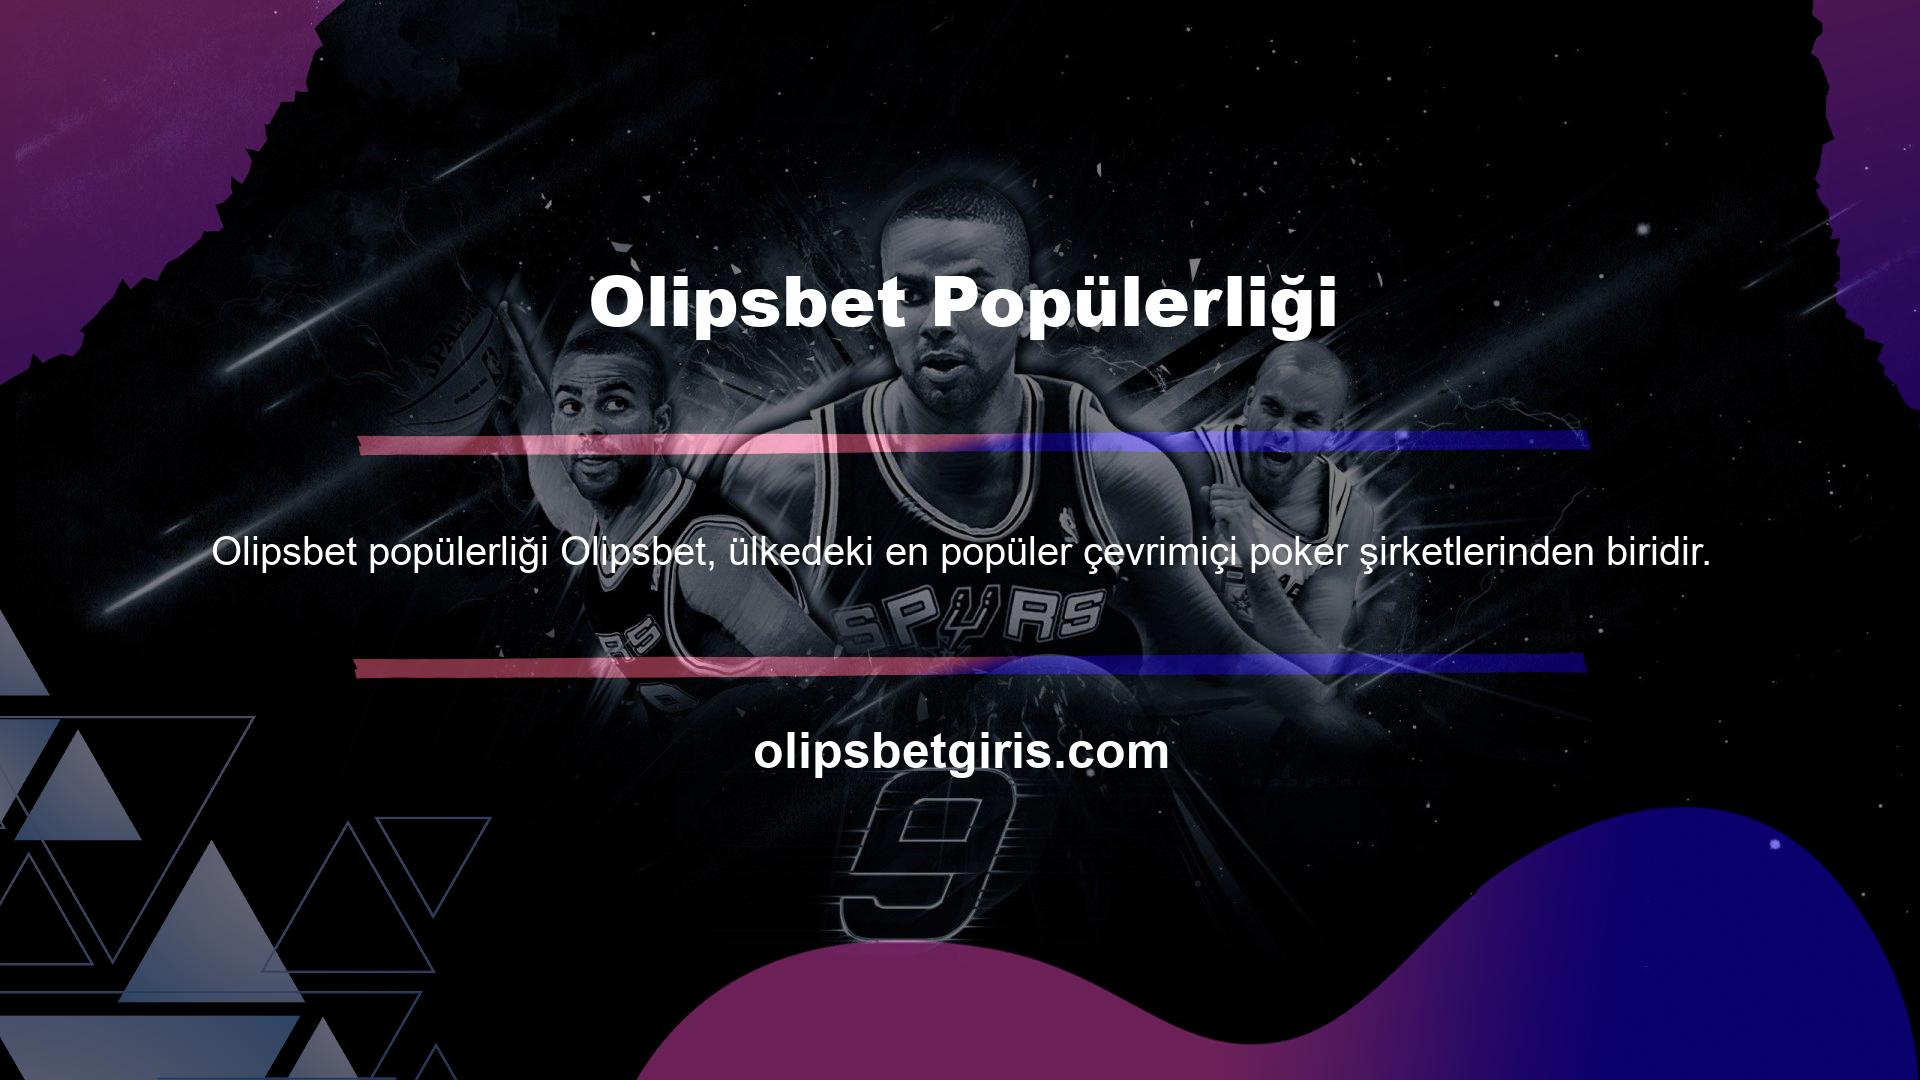 Olipsbet, Türkiye'de slot oyunlarıyla uğraşan herkesin hayran olduğu güvenilir casino sitelerinden biridir